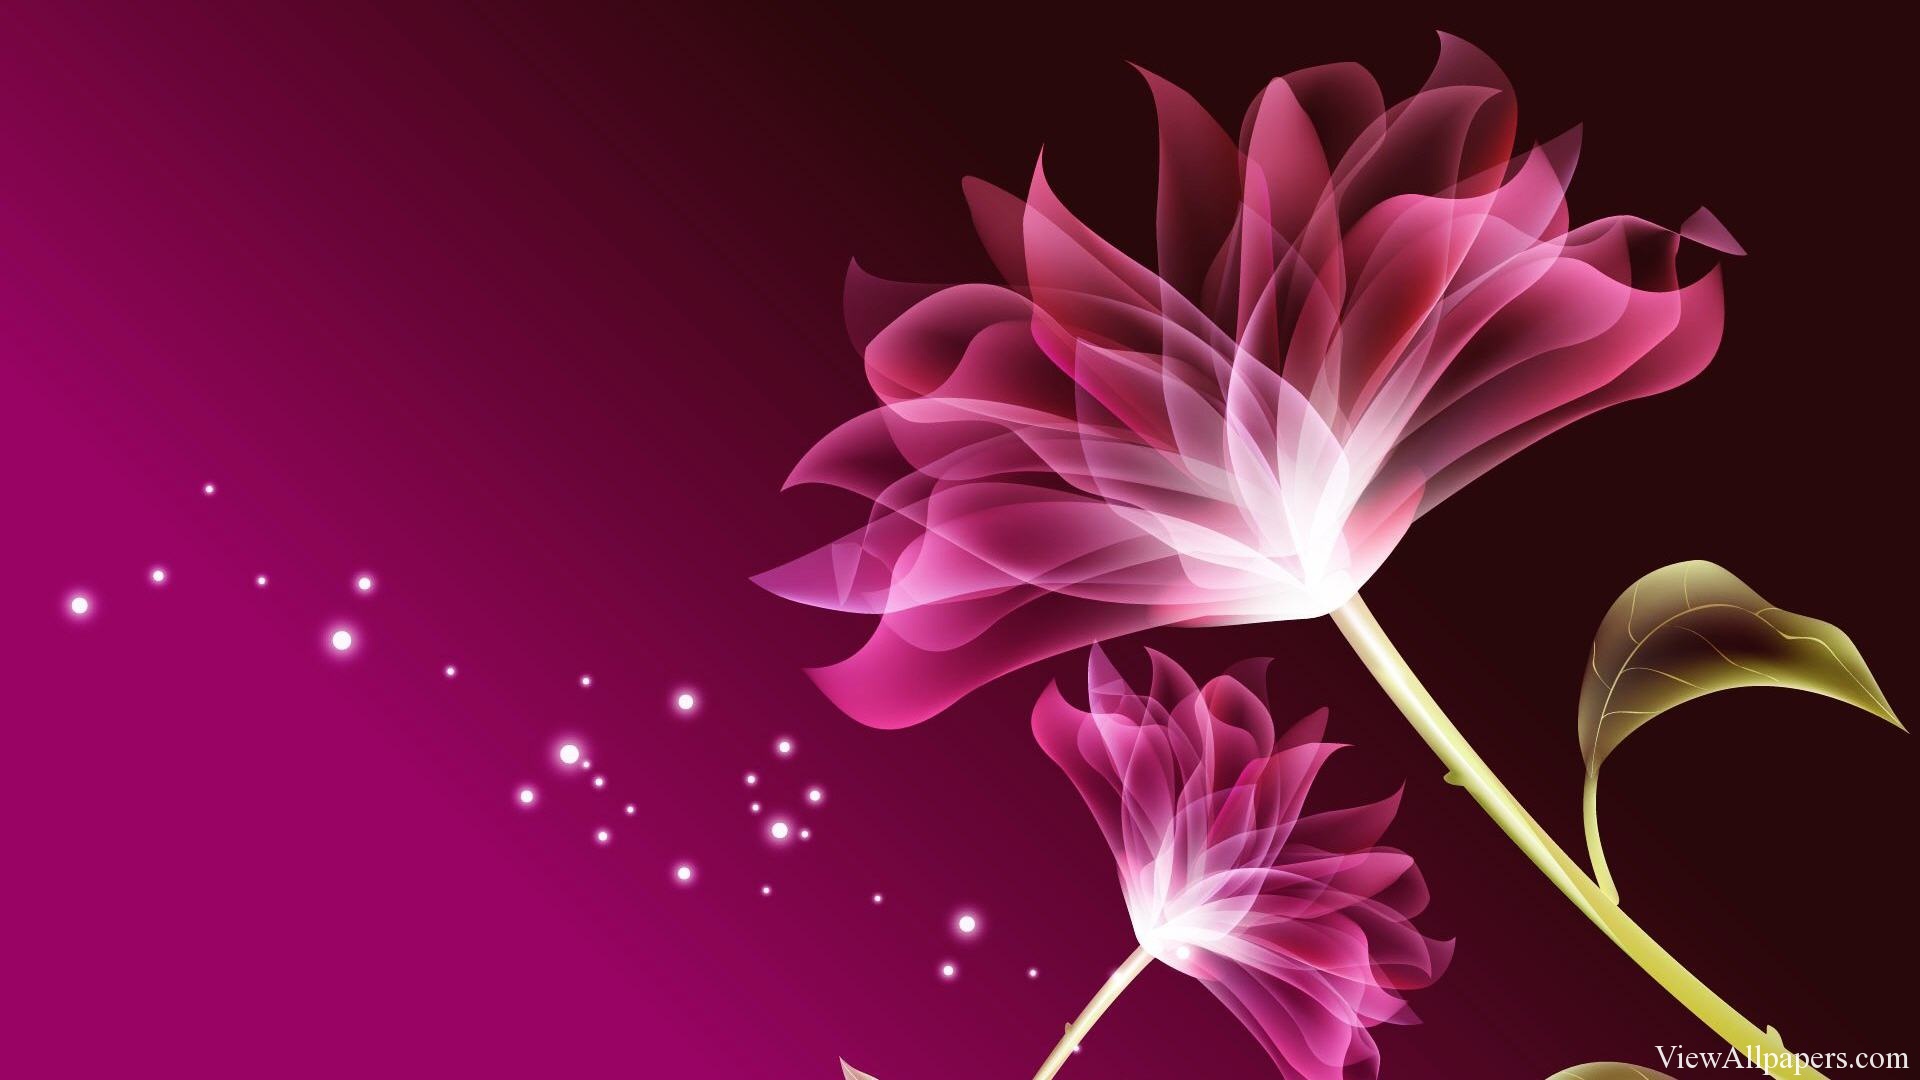 3d Pink Beautiful Flower Wallpaper High Resolution